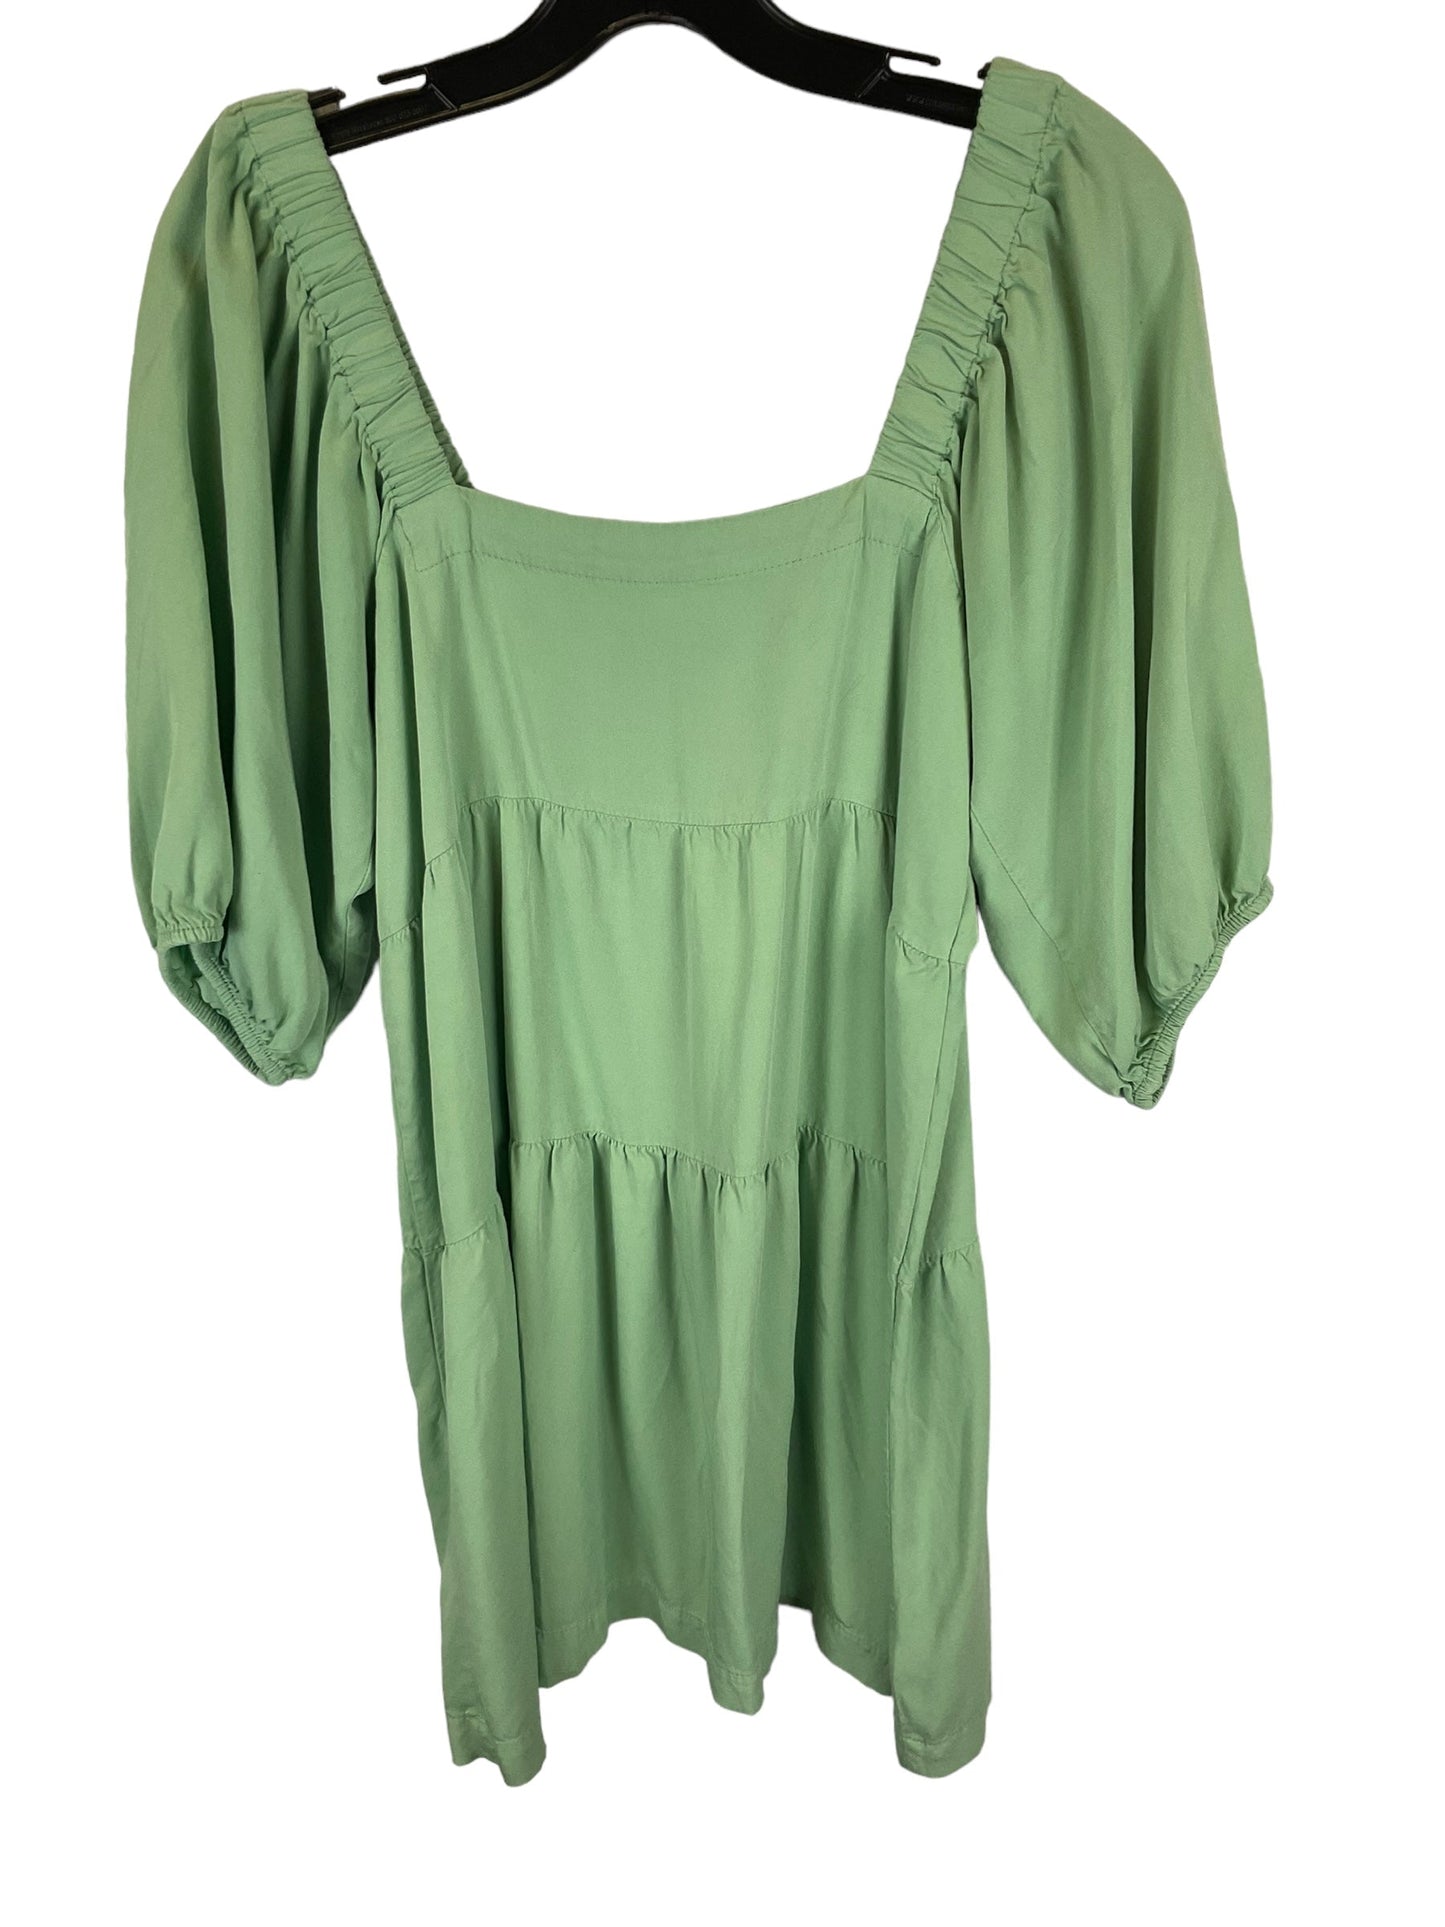 Green Dress Casual Short Shinestar, Size M